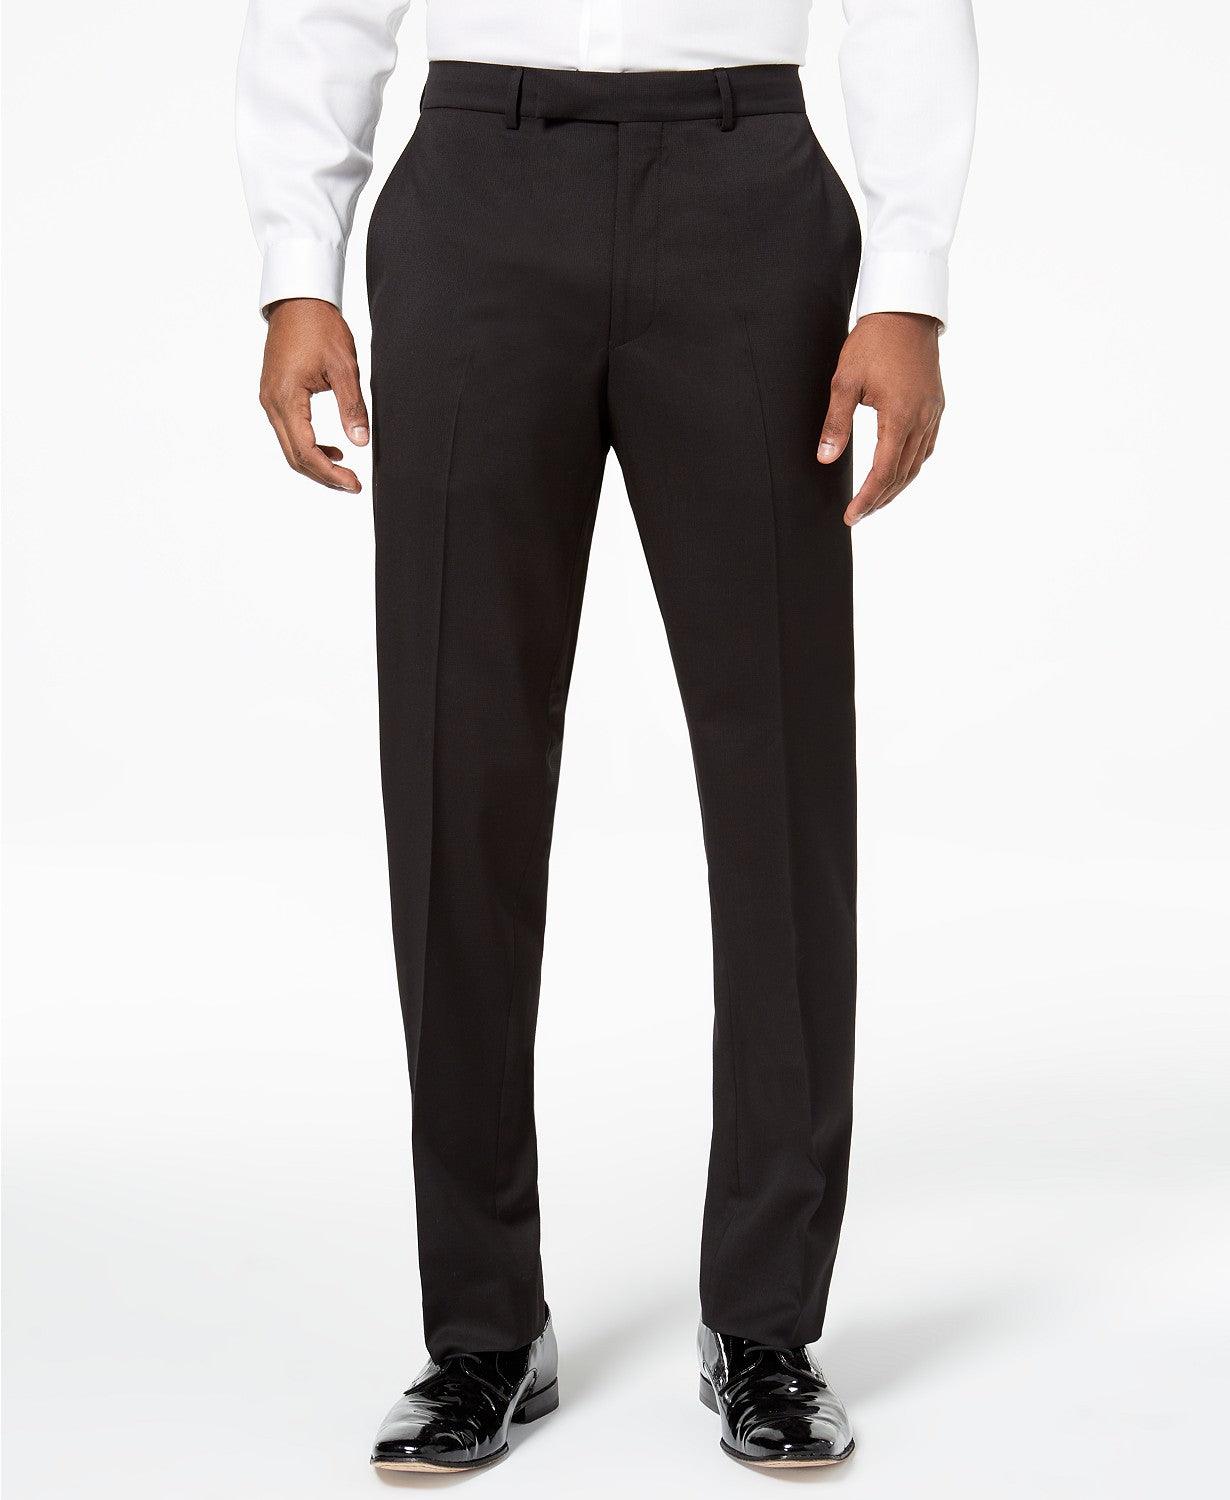 Kenneth Cole Mens Tuxedo Suit 38S / 31 x 32 Flex Slim-Fit Black Notch Lapel - Bristol Apparel Co